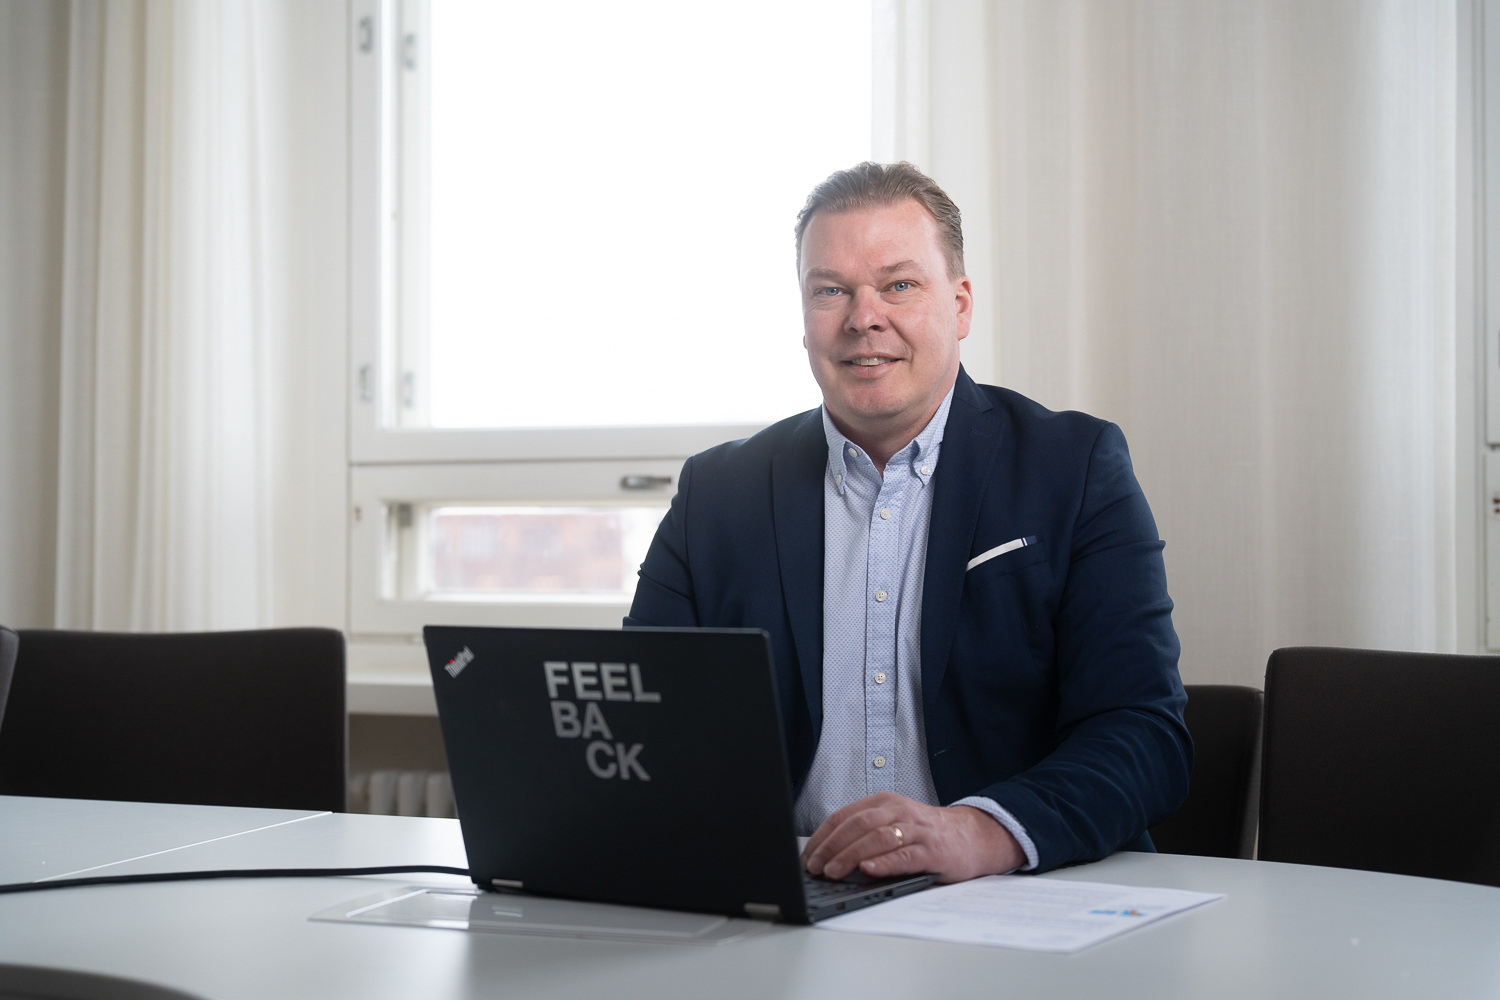 Feelbackin myyntijohtaja Juha Järvi on tyytyväinen Granon tutkimustoimialan tuntemukseen ja luotettavuuteen kumppanina.